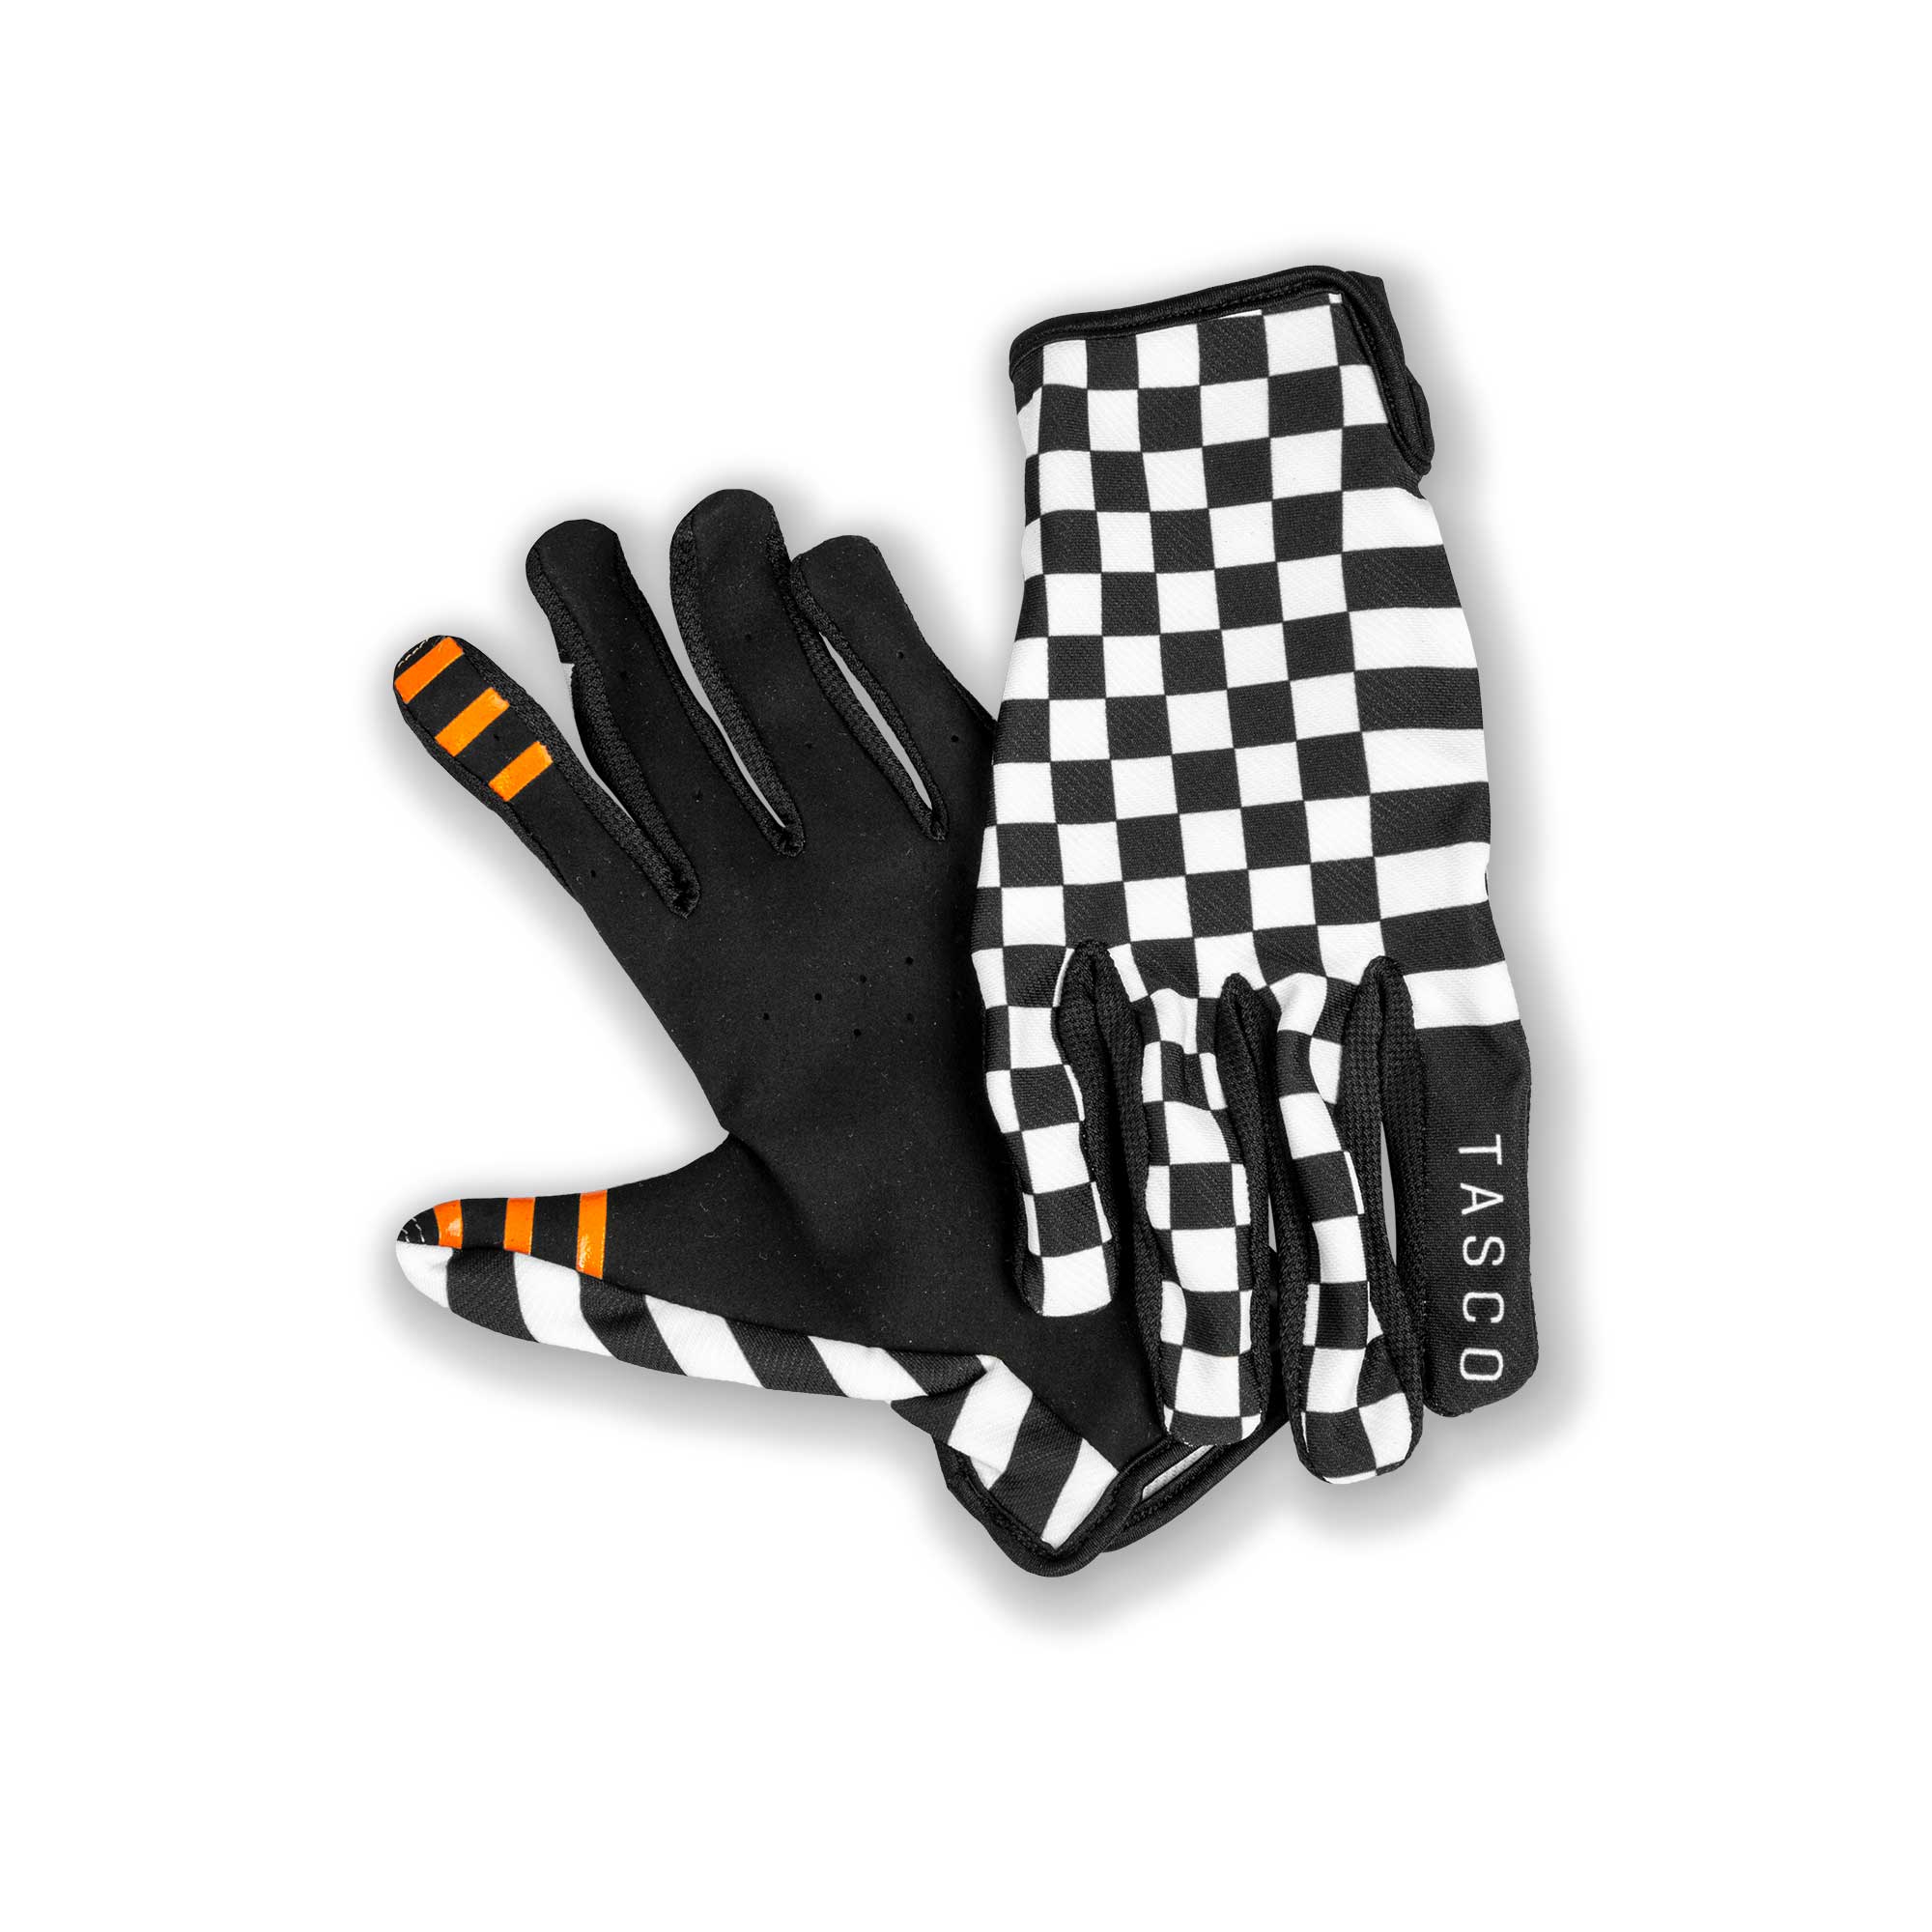 Checkmate-gloves-detail.jpg